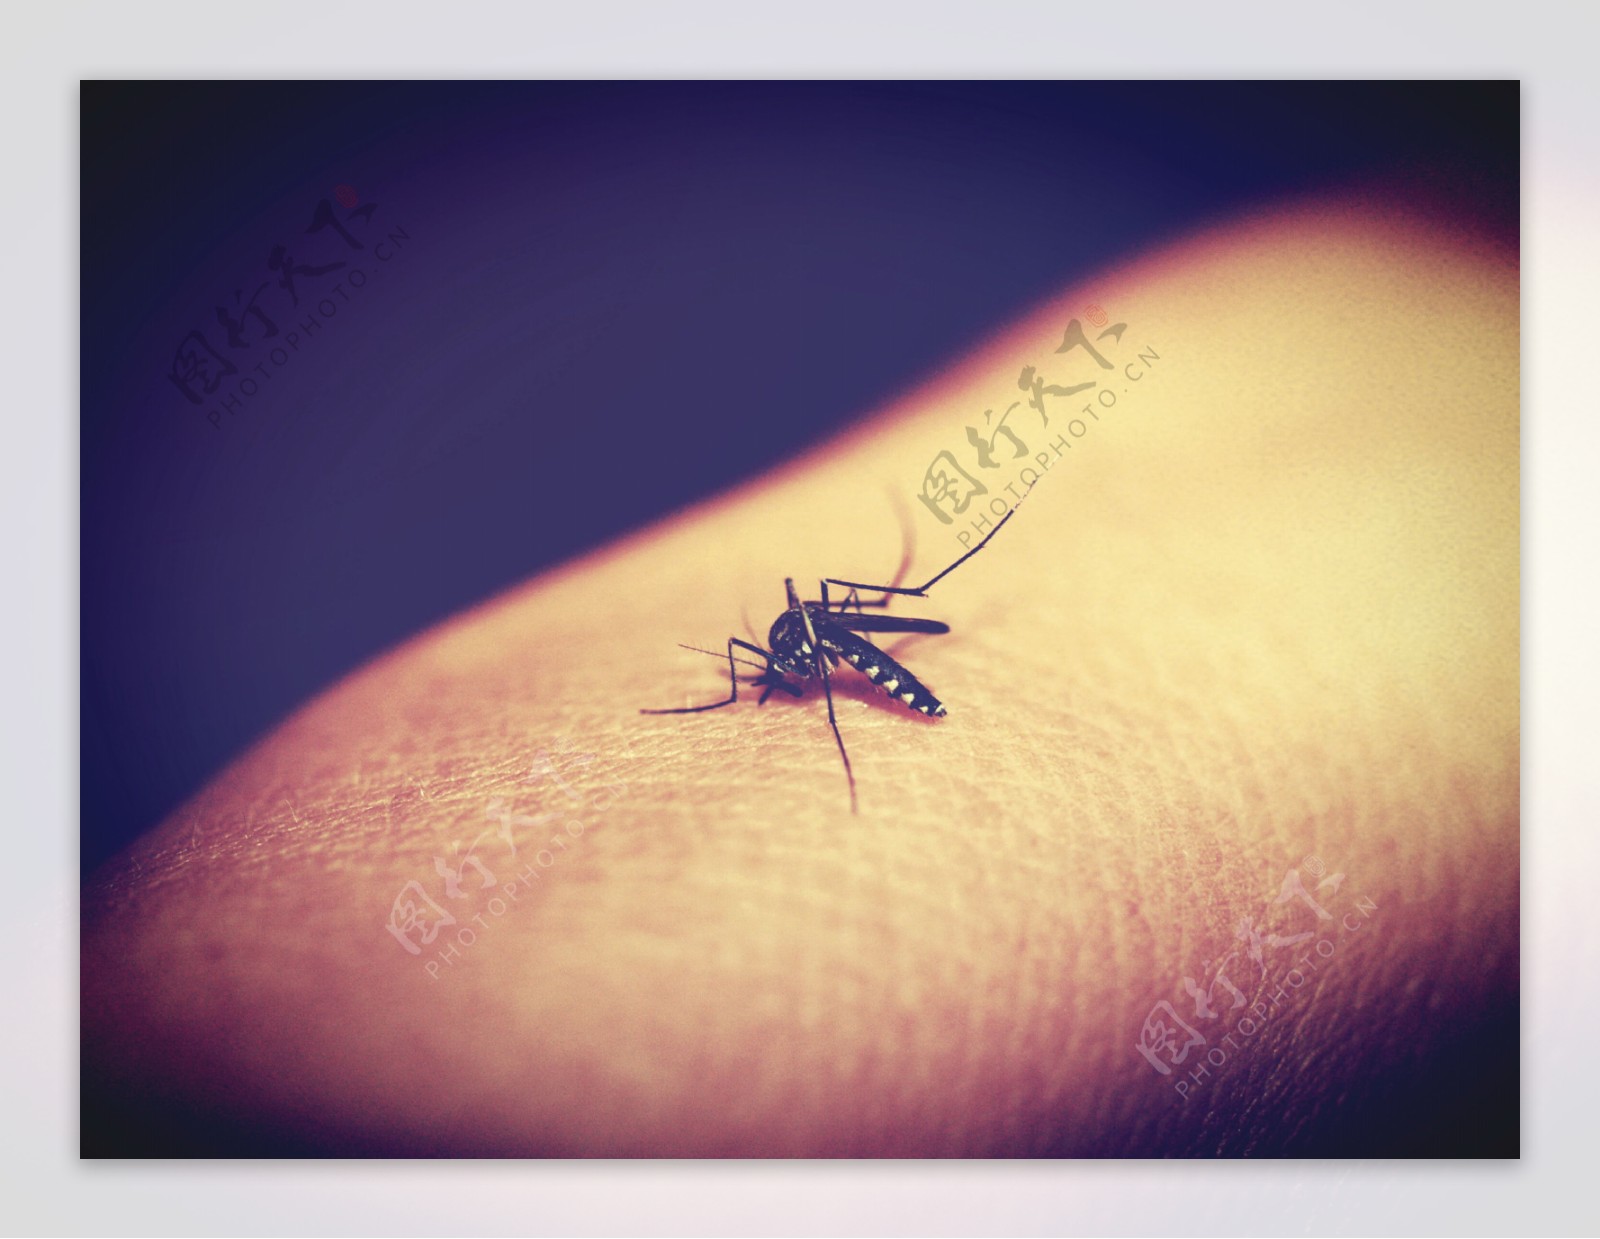 高清蚊子吸血图片